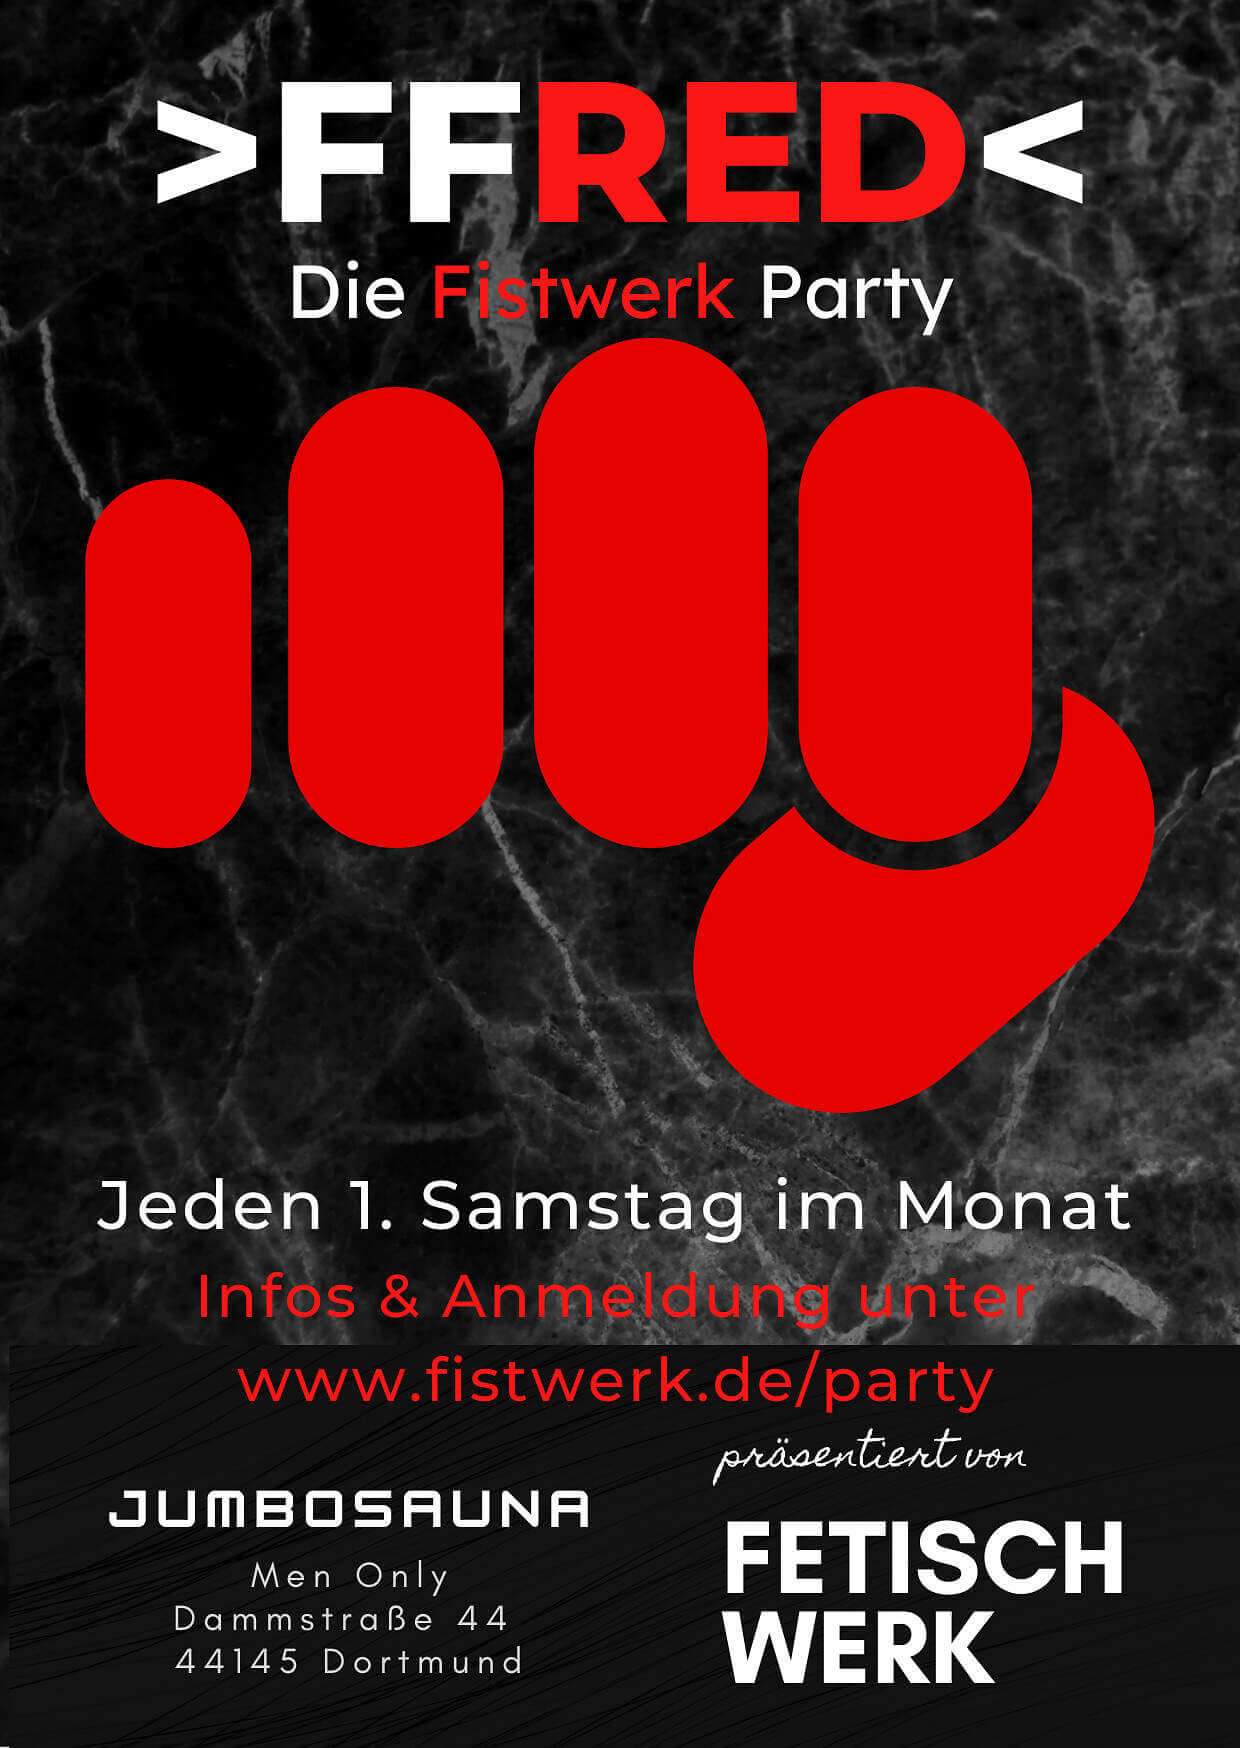 Das war die Fistwerk Party in Dortmund am 07.08.2021